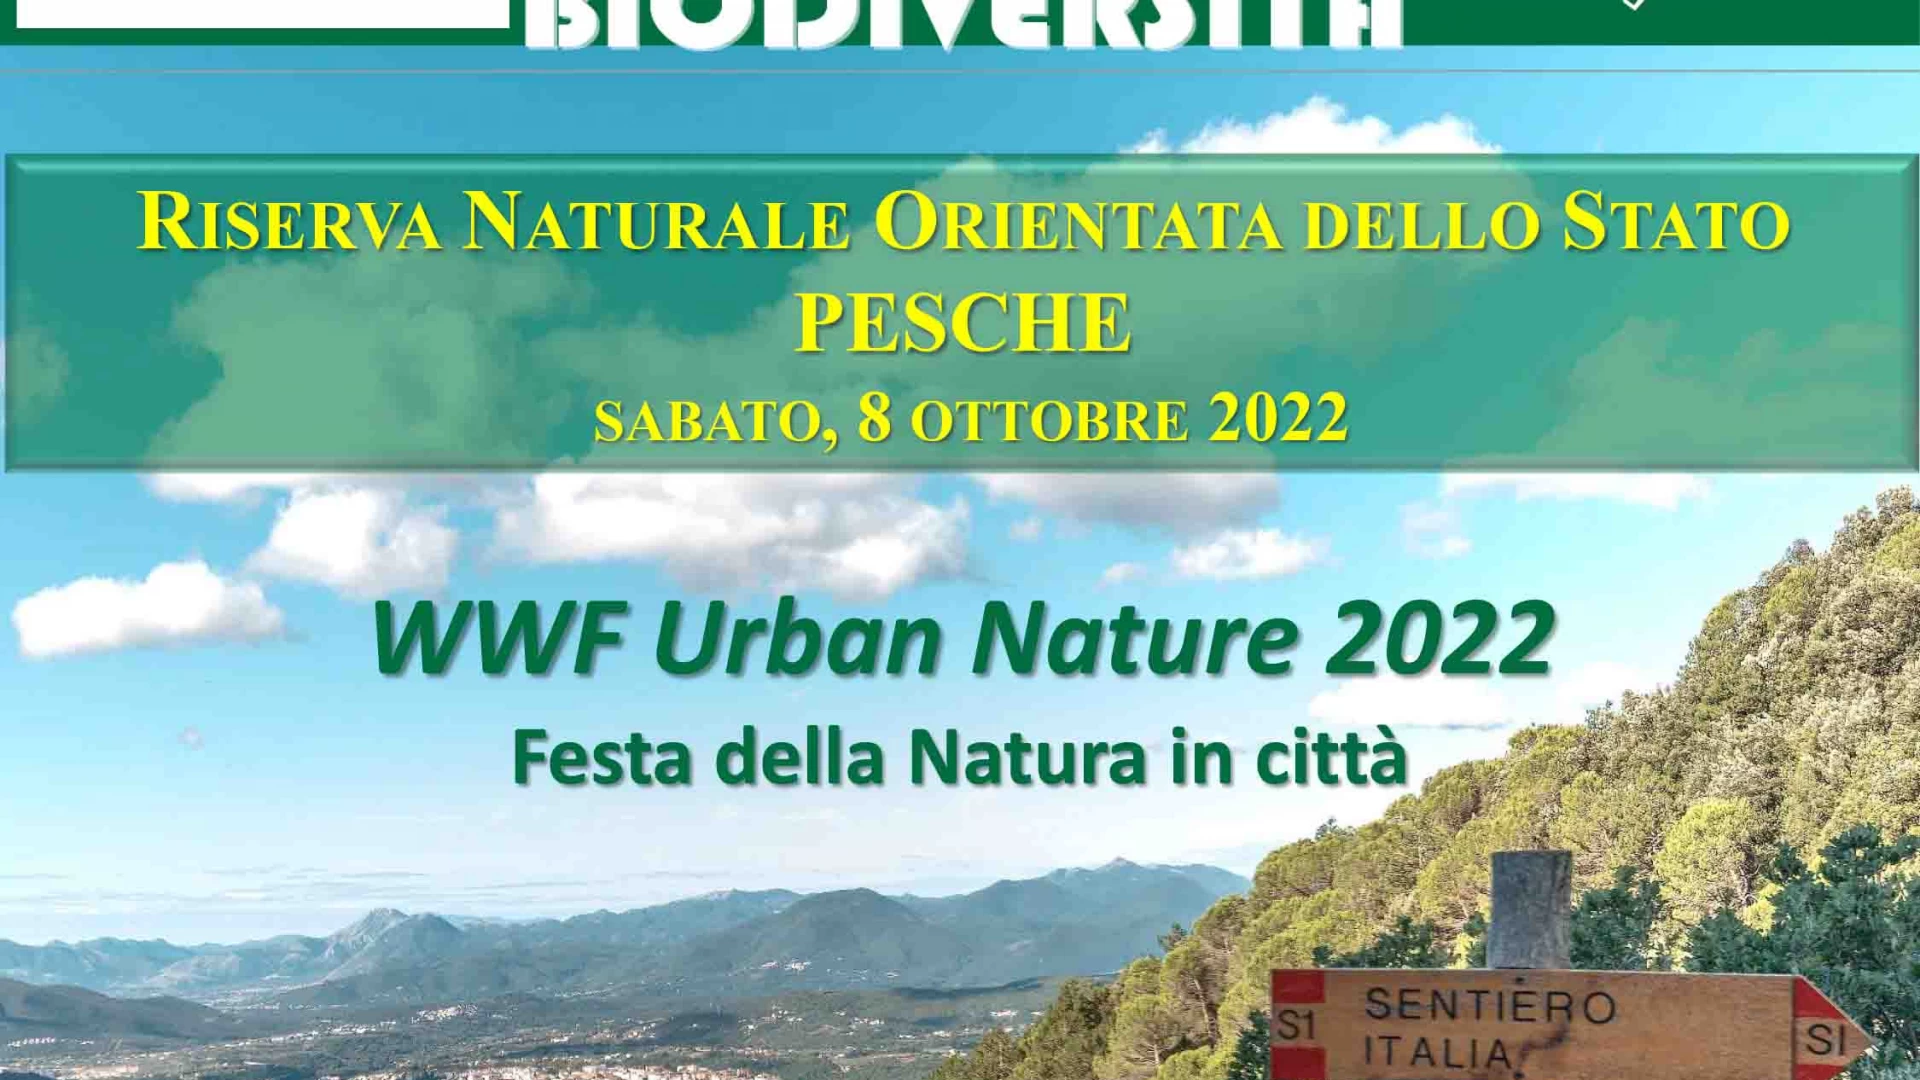 Urban Nature: torna le festa della natura in città. La nota dei Carabinieri per la Biodiversità di Isernia.